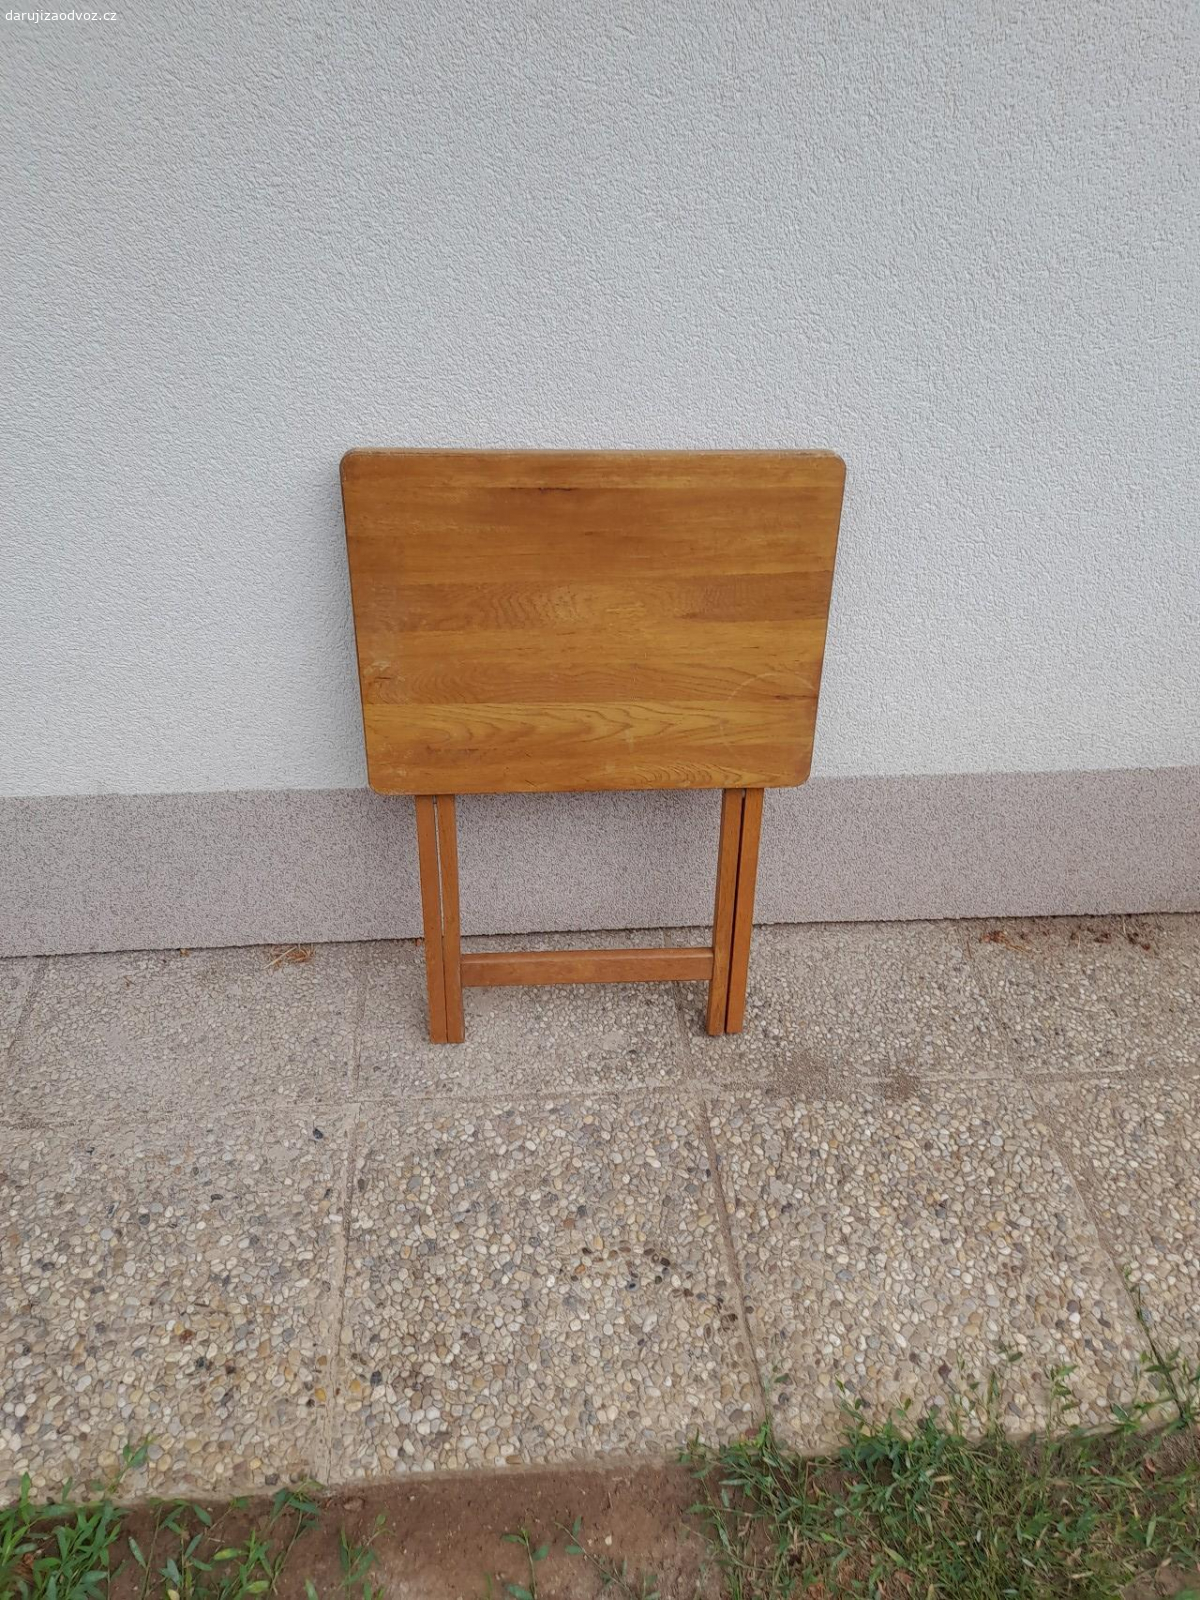 Dřevěný skládací stoleček. Stoleček je v dobrém stavu, dá se i složit. Rozměry:
Výška 66,5 cm
Plocha desky 48,5 cm x 36 cm
K odběru:
5.7. - 7.7.
27.7. - 1.8.
19.8. - 23.8.